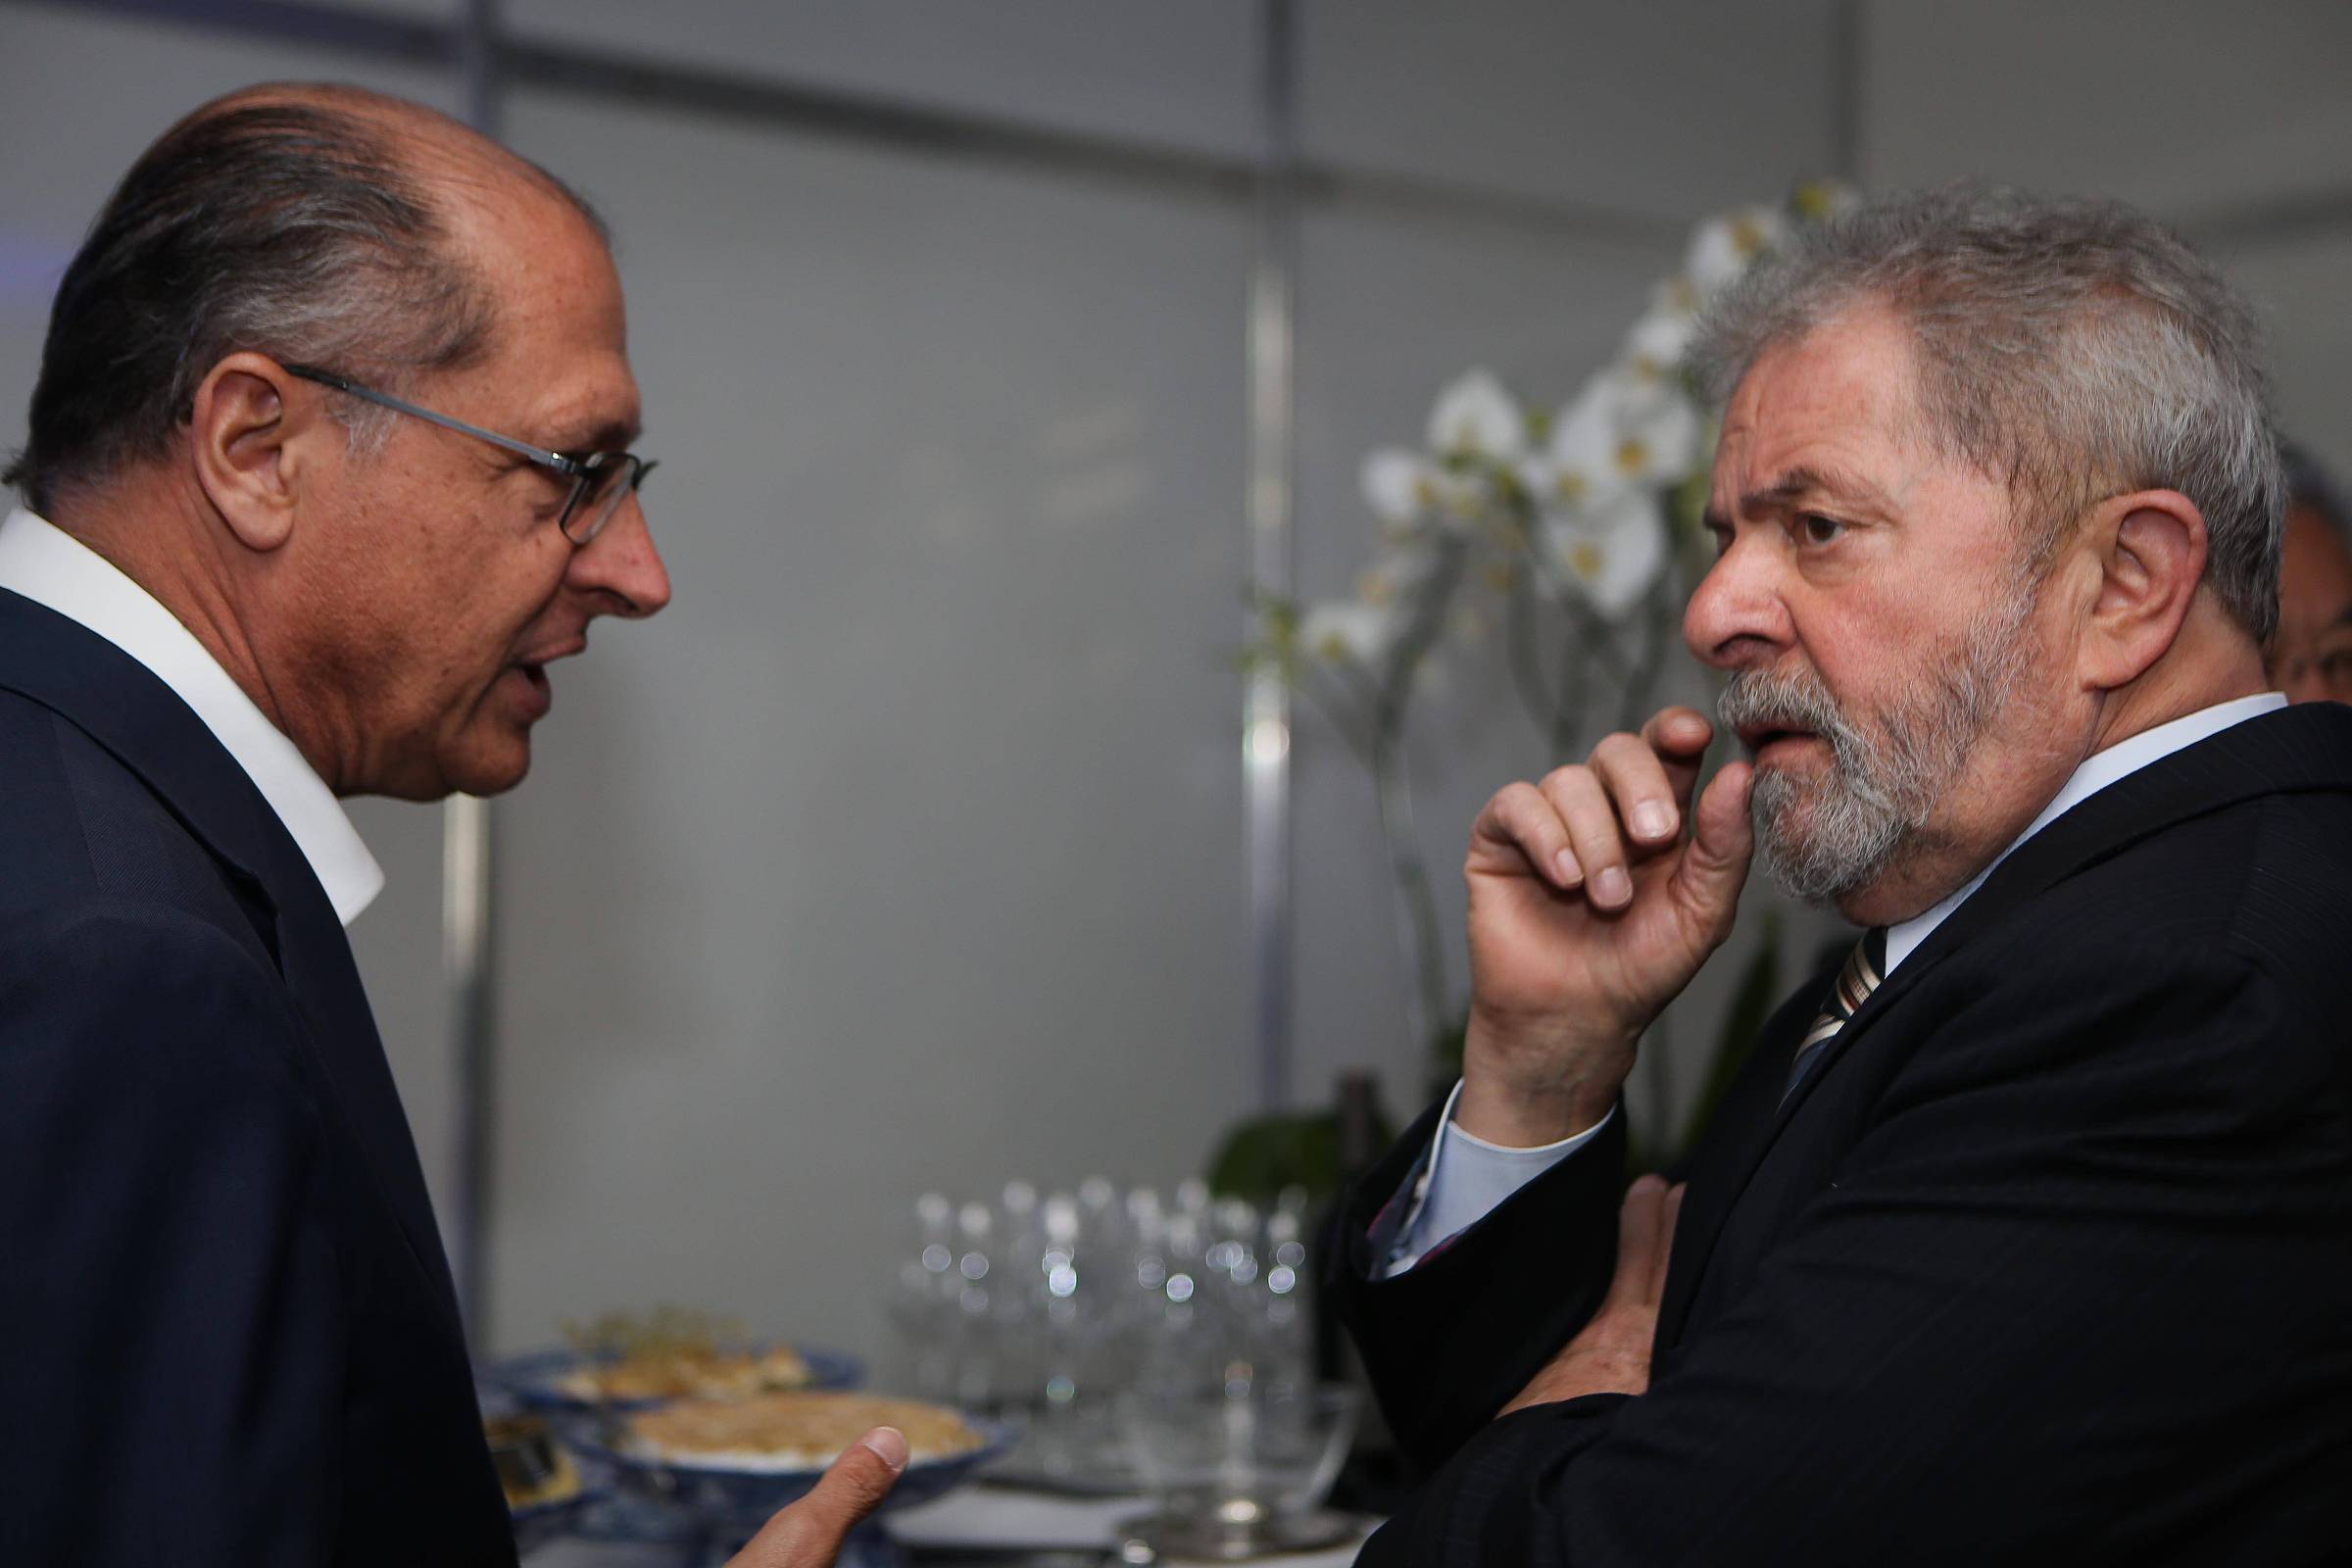 Lula dit qu’avec Alckmin il pourrait dormir paisiblement, selon des interlocuteurs – 08/11/2021 – Mônica Bergame